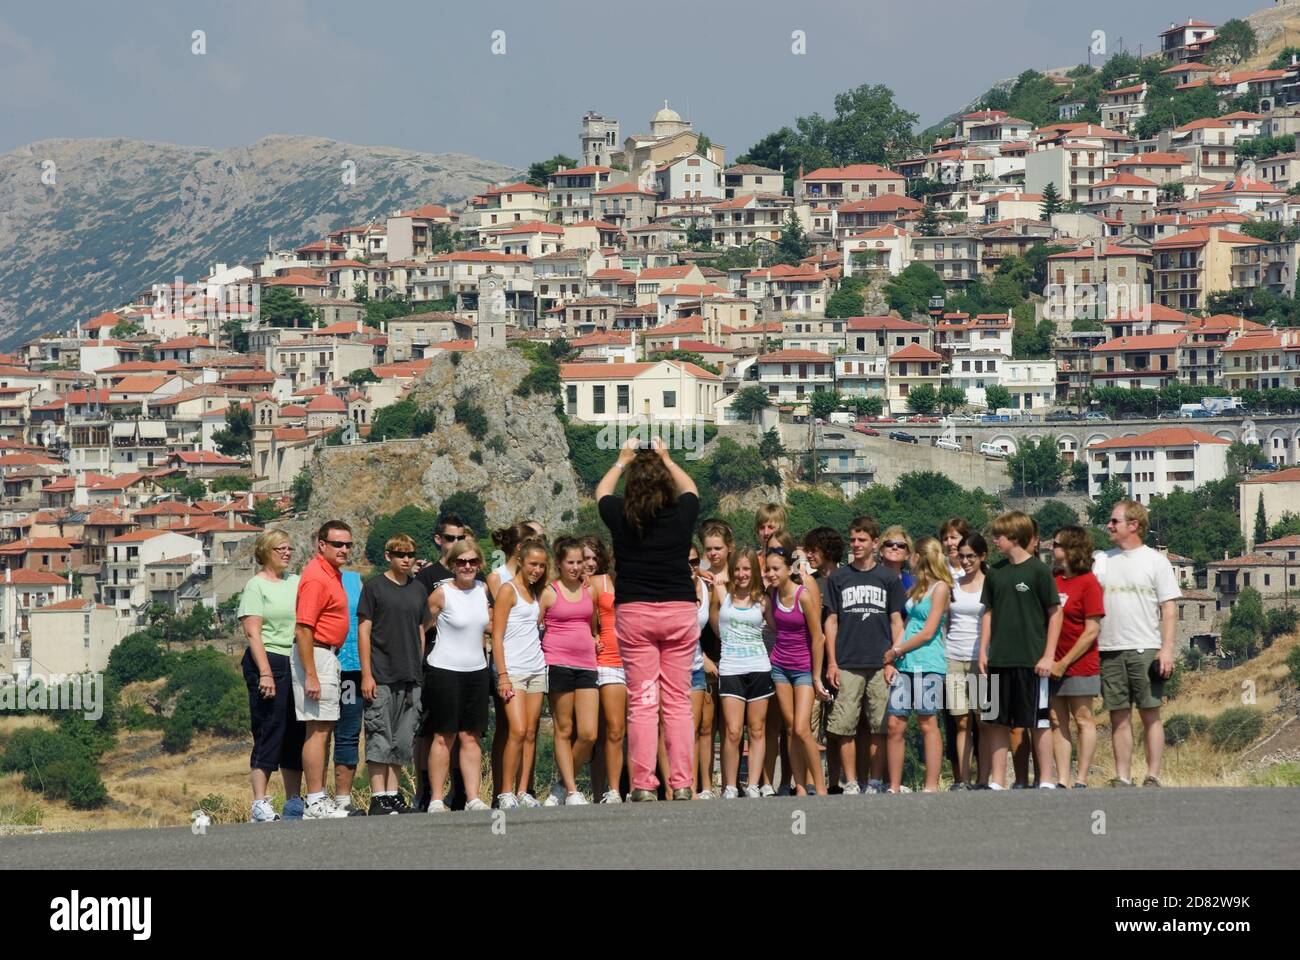 Arachova, Grèce - 18 juillet 2009: Un groupe d'écoles de tourisme pose pour une photo; en arrière-plan le village d'Arachova en Grèce (le groupe est hors de FO Banque D'Images